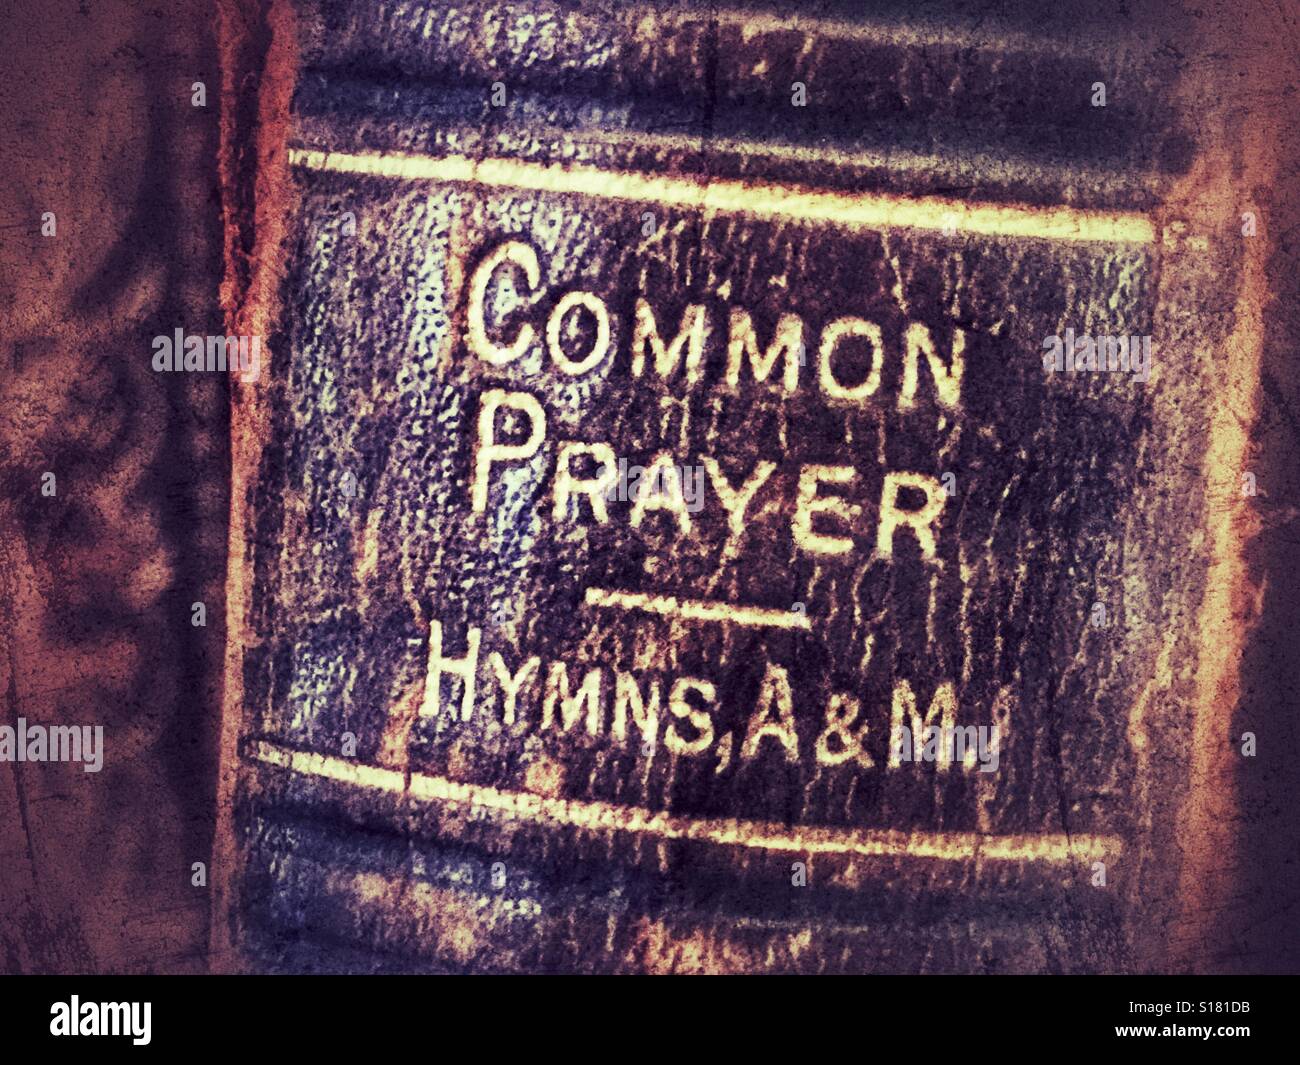 La preghiera comune, inni A & M Foto Stock